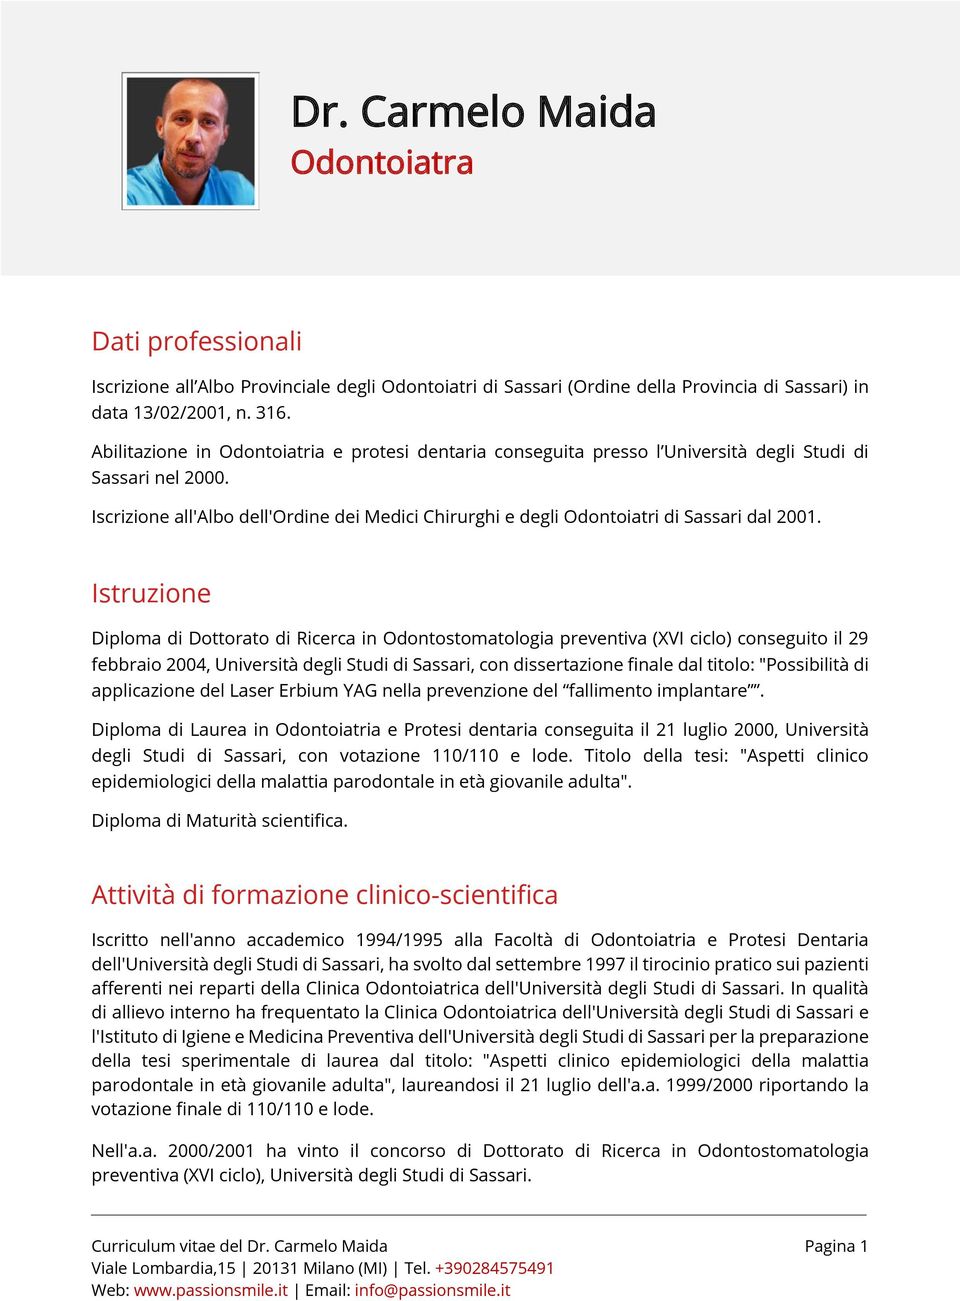 Iscrizione all'albo dell'ordine dei Medici Chirurghi e degli Odontoiatri di Sassari dal 2001.